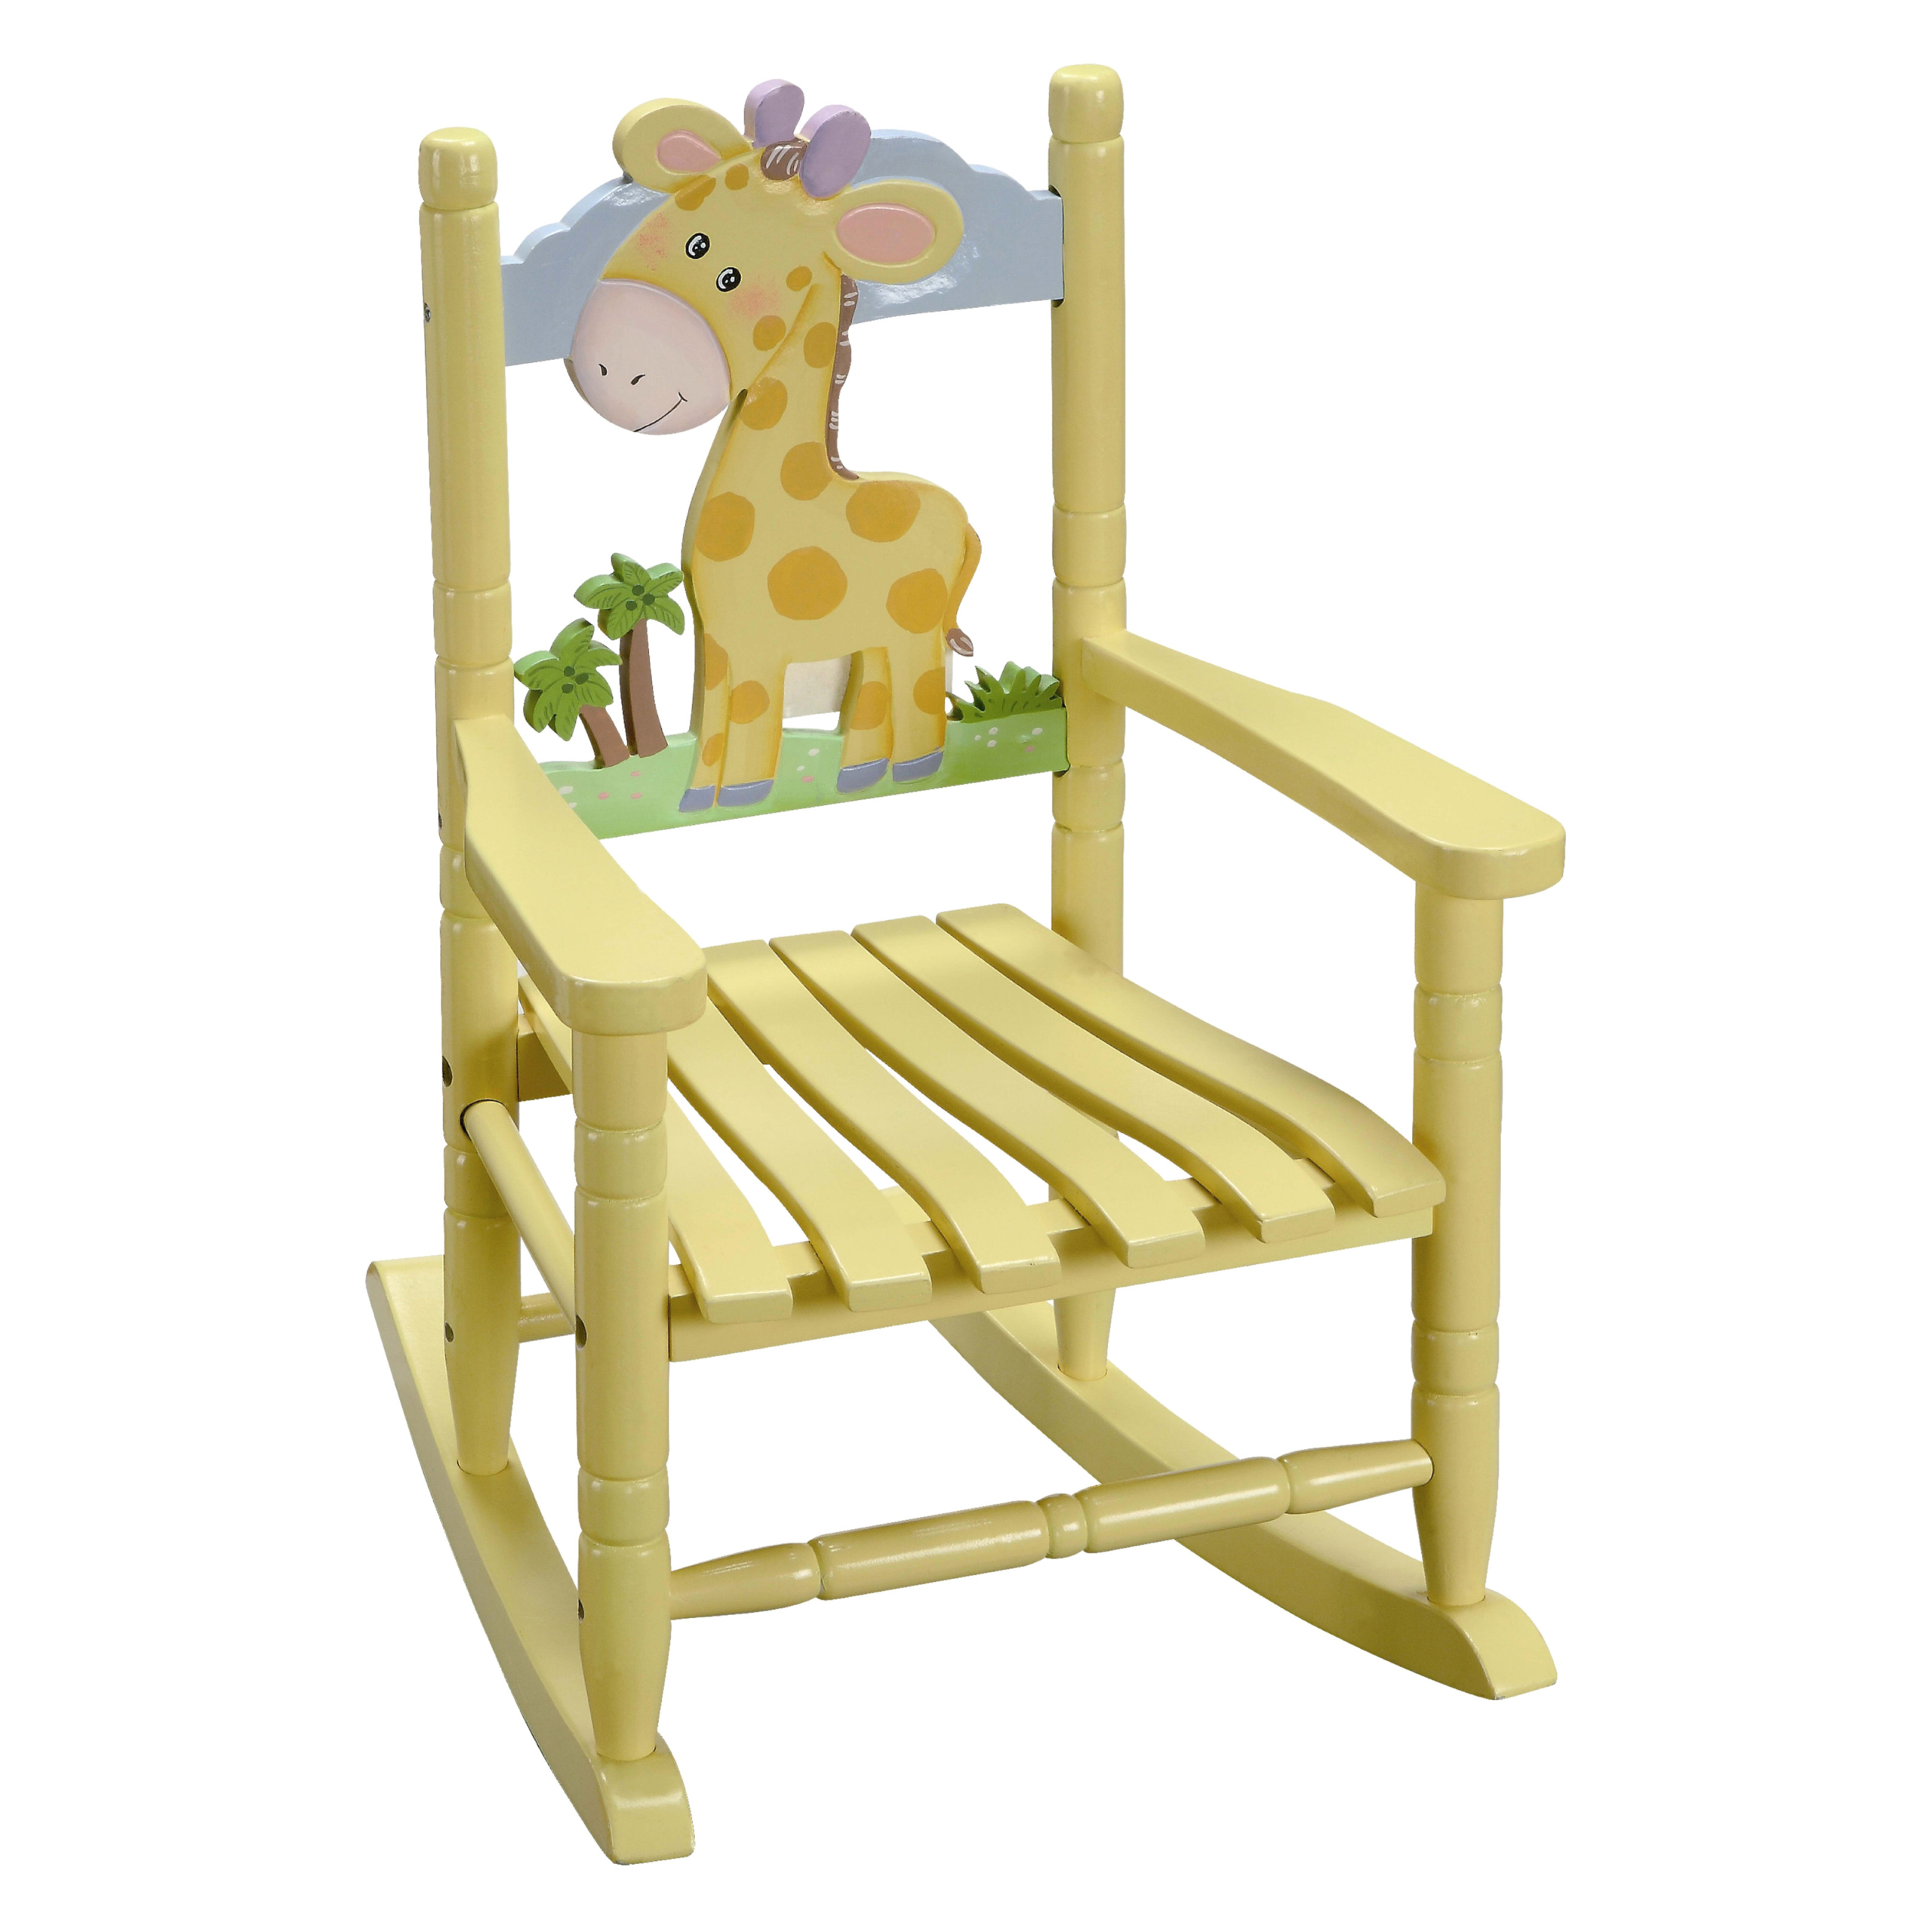 Teamson Kids Zebra Safari Wooden Rocking Chair for Children 